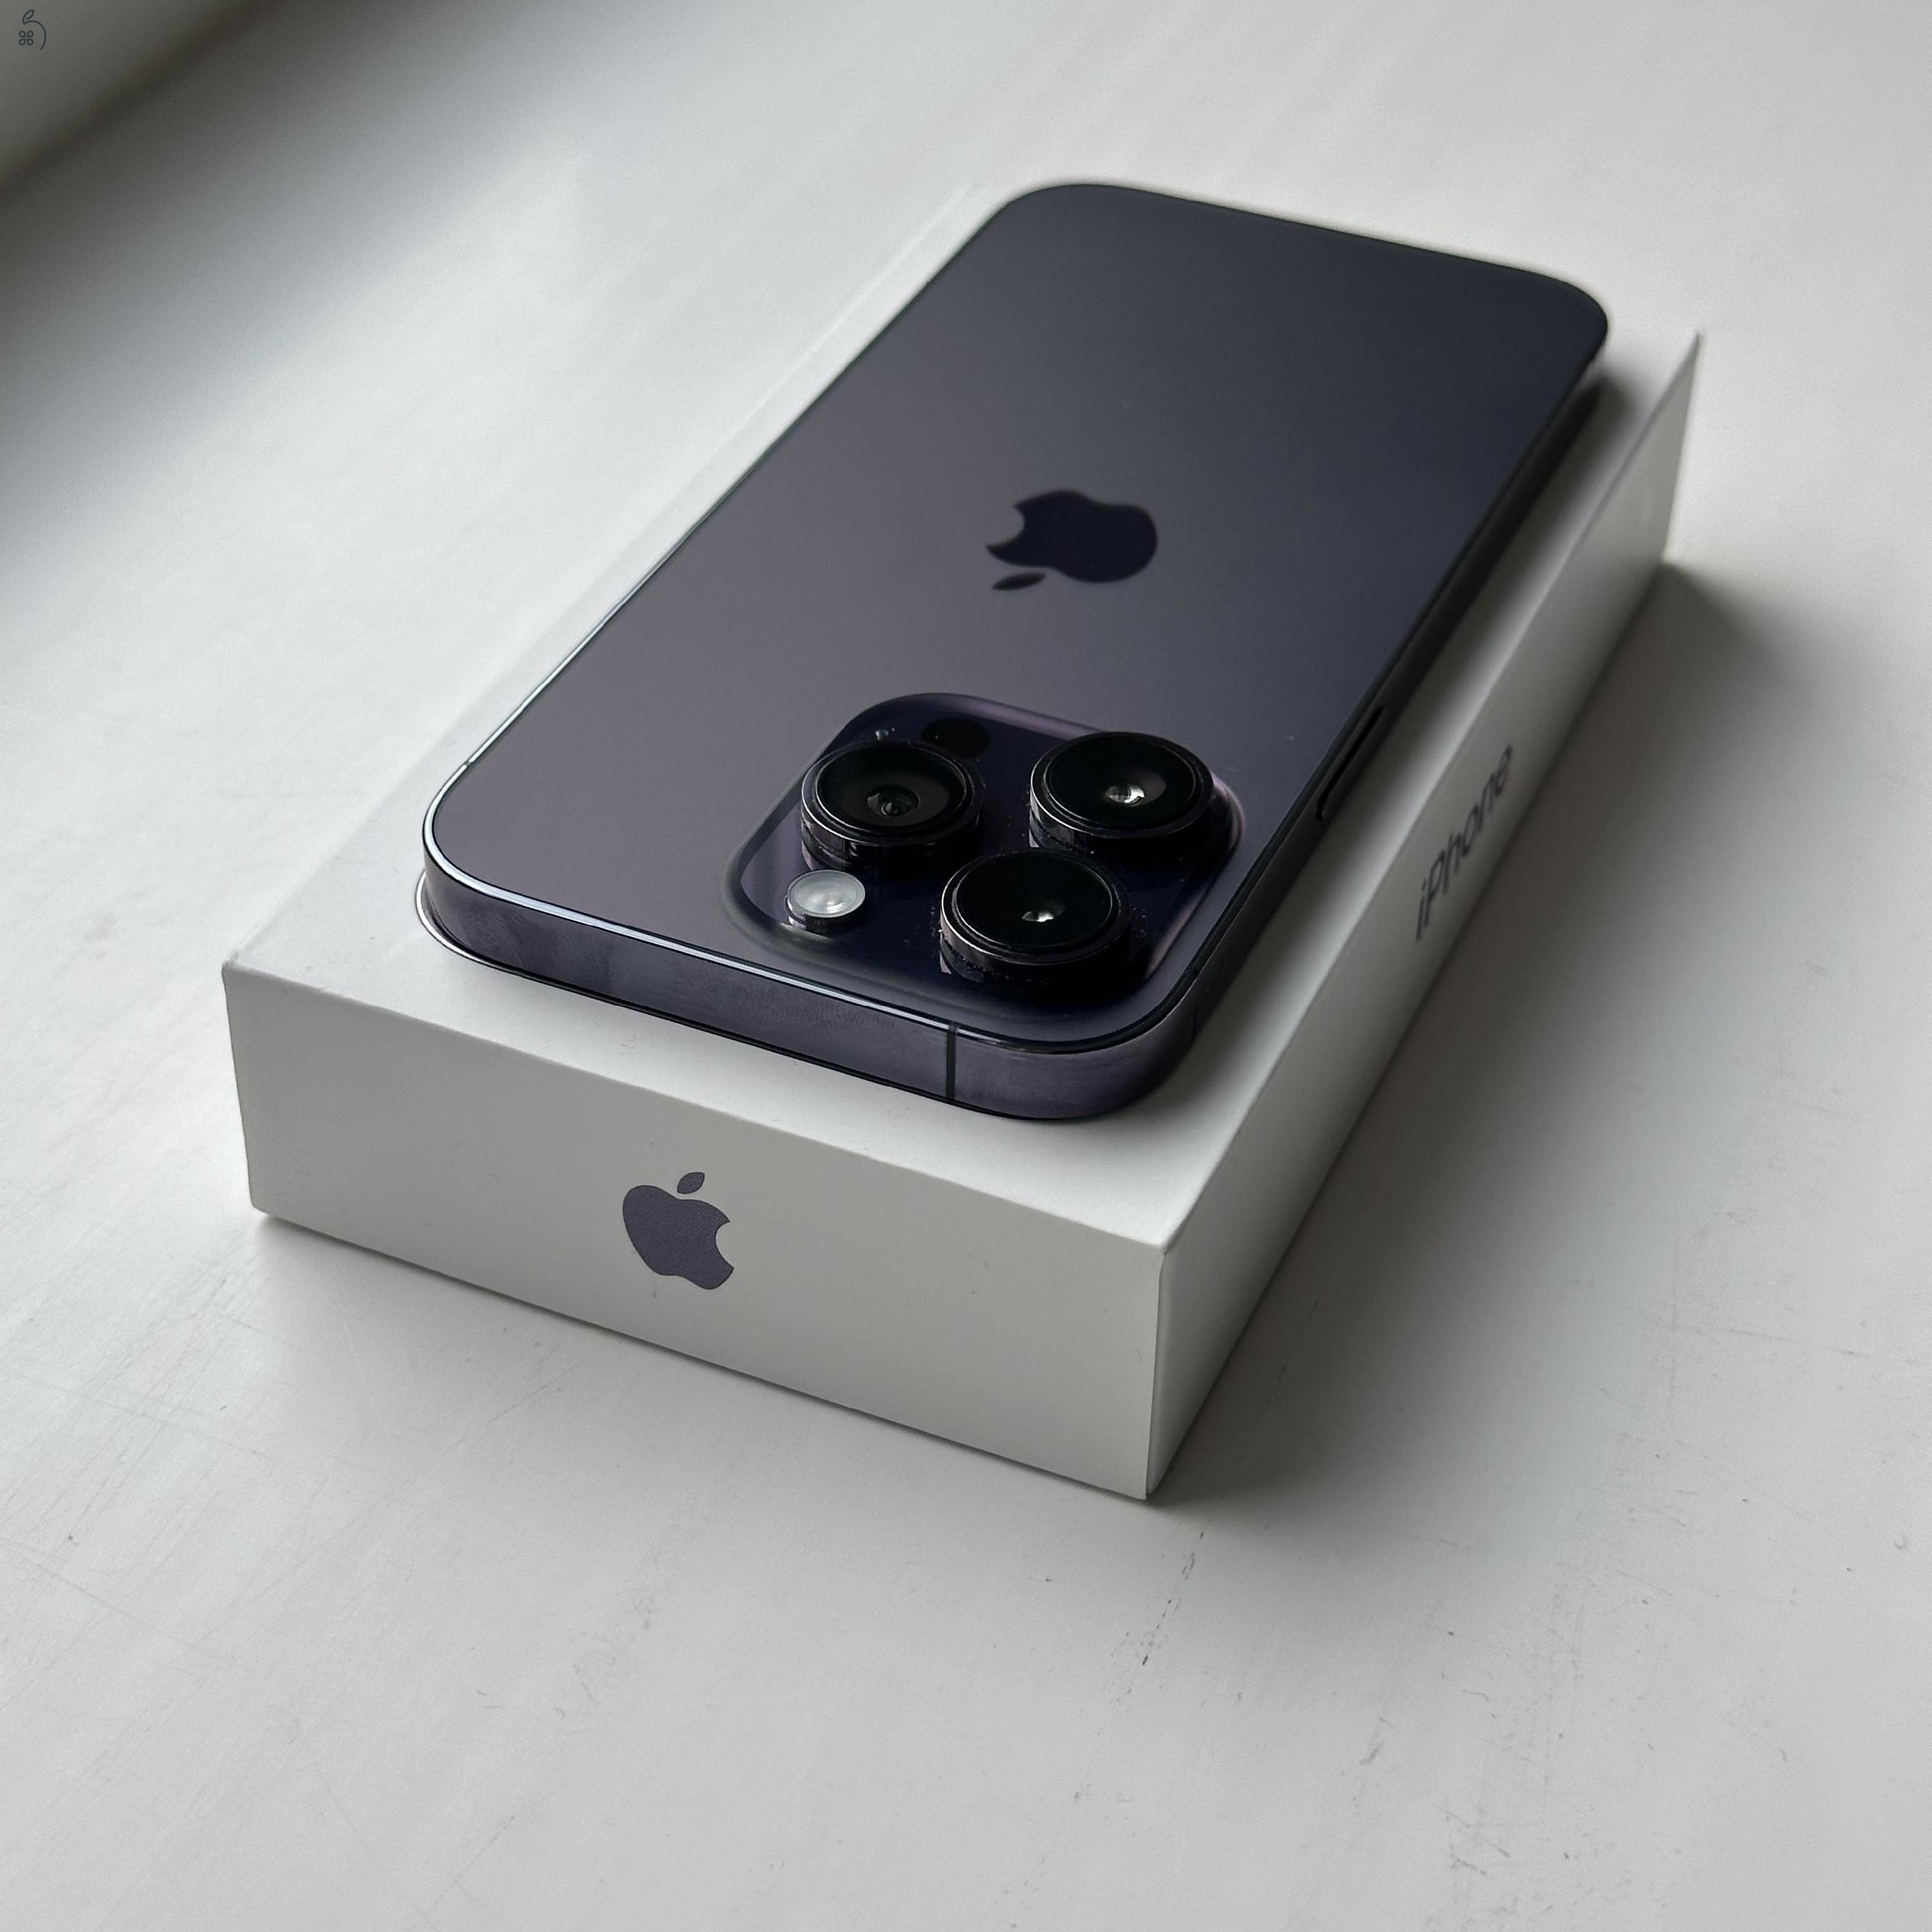 HIBÁTLAN iPhone 14 Pro Deep Purple 256GB - 1 ÉV Garanciával, Kártyafüggetlen, 96% Akkumulátor